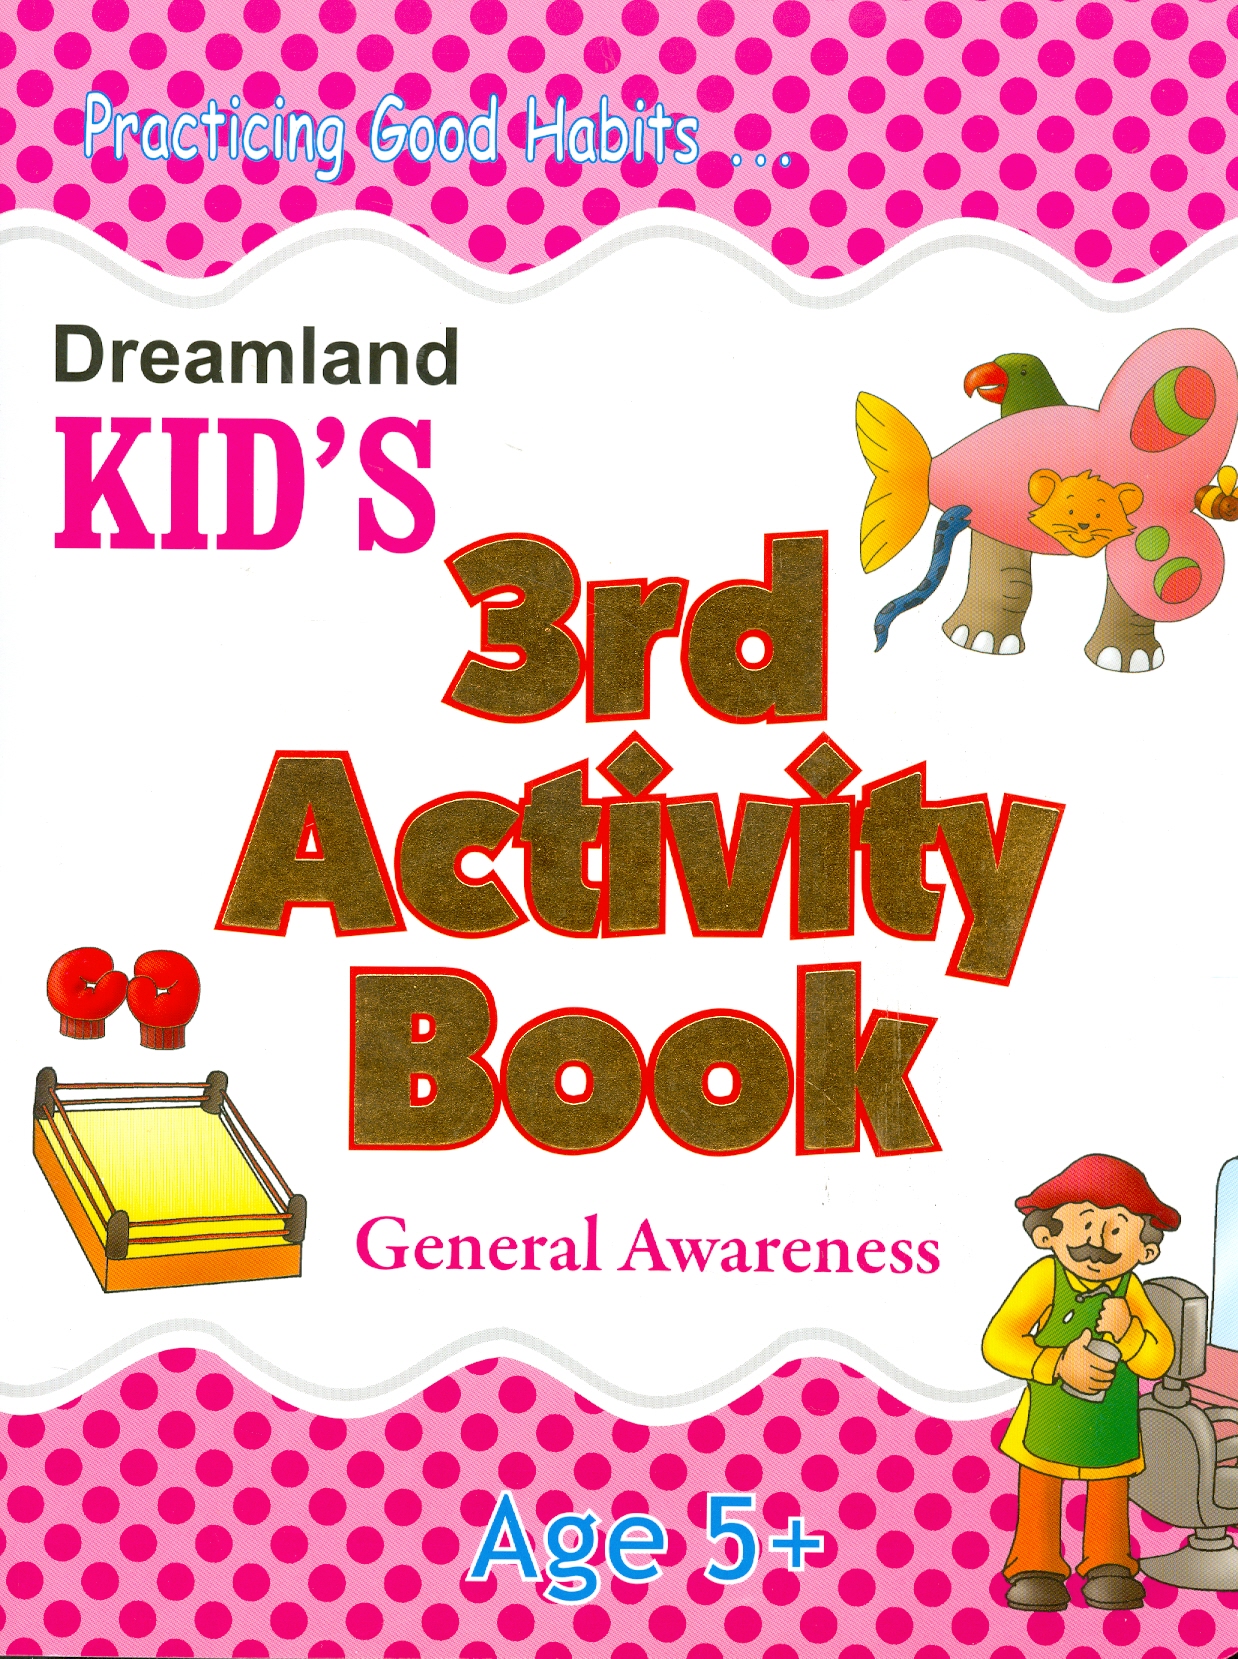 Kid's 3rd Activity Book General Awareness - Age 5+ (Các Hoạt Động Kiến Thức Chung Cho Trẻ 5+)